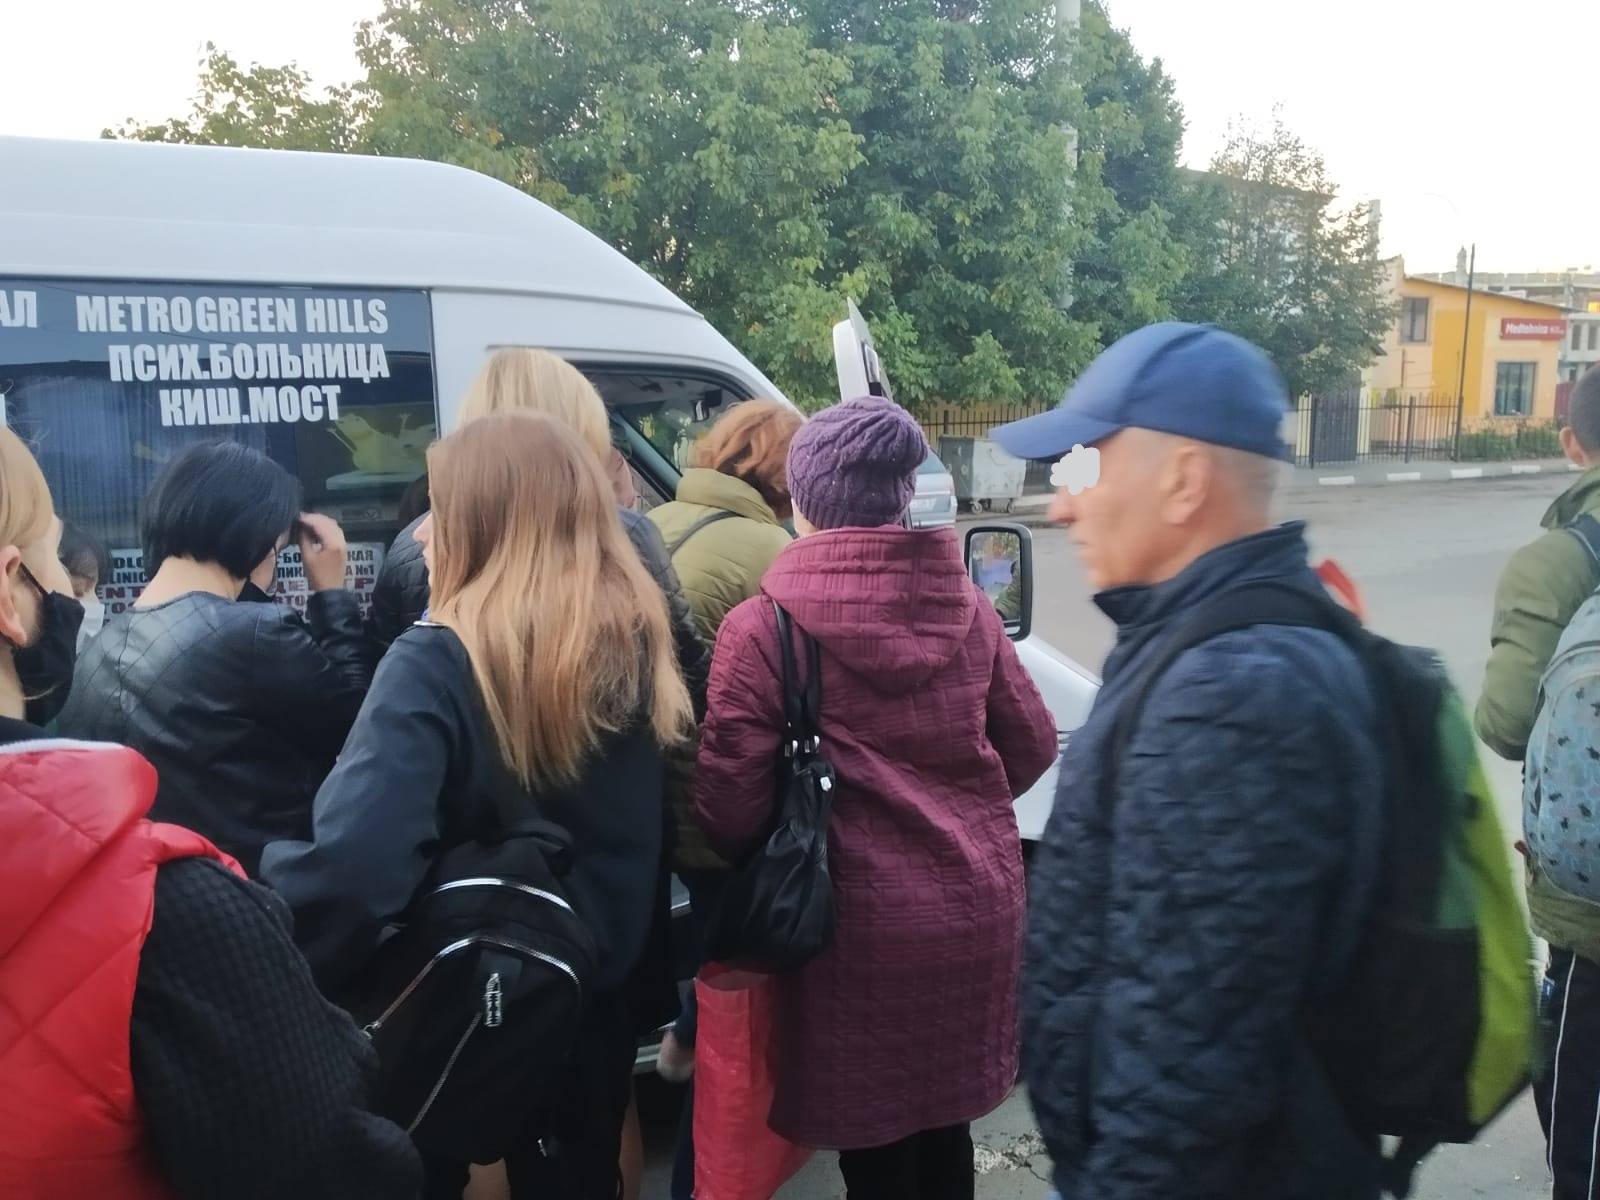 Locuitorii orașului Bălți care nu respectă măsurile antiepidemice vor fi sancționați de către polițiști